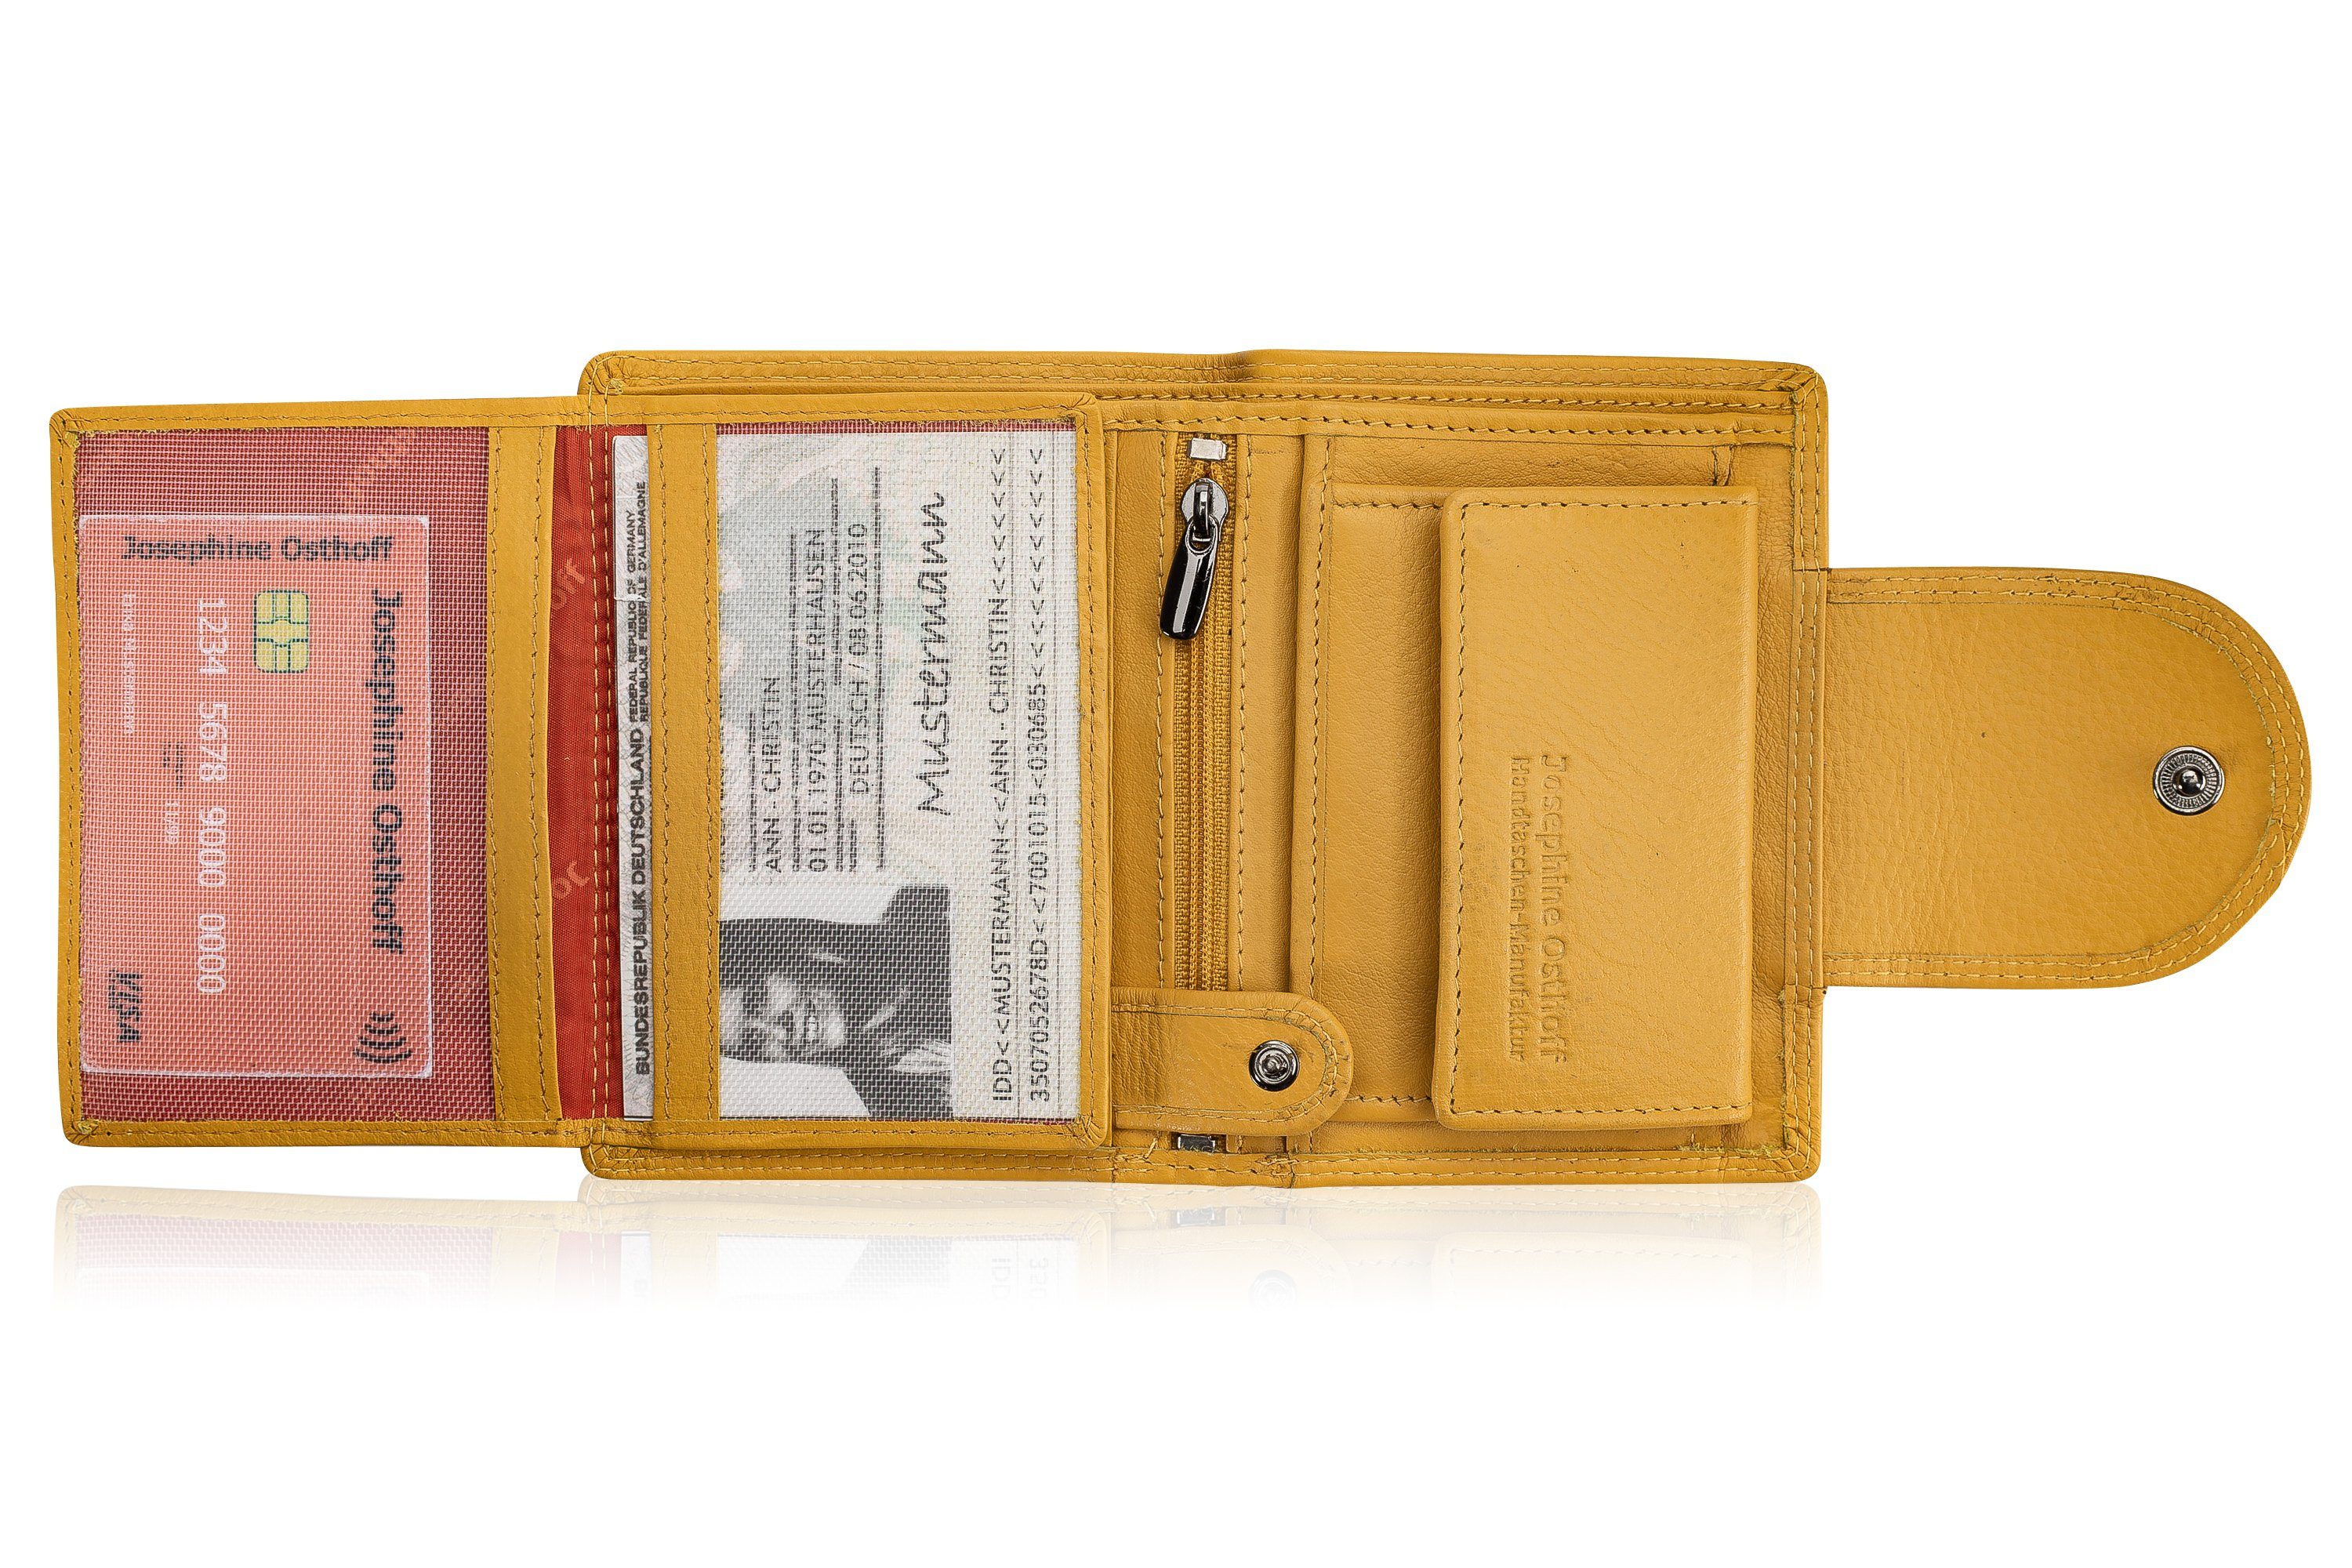 Josephine Osthoff Brieftasche Wiener Minibrieftasche Geldbörse gelb